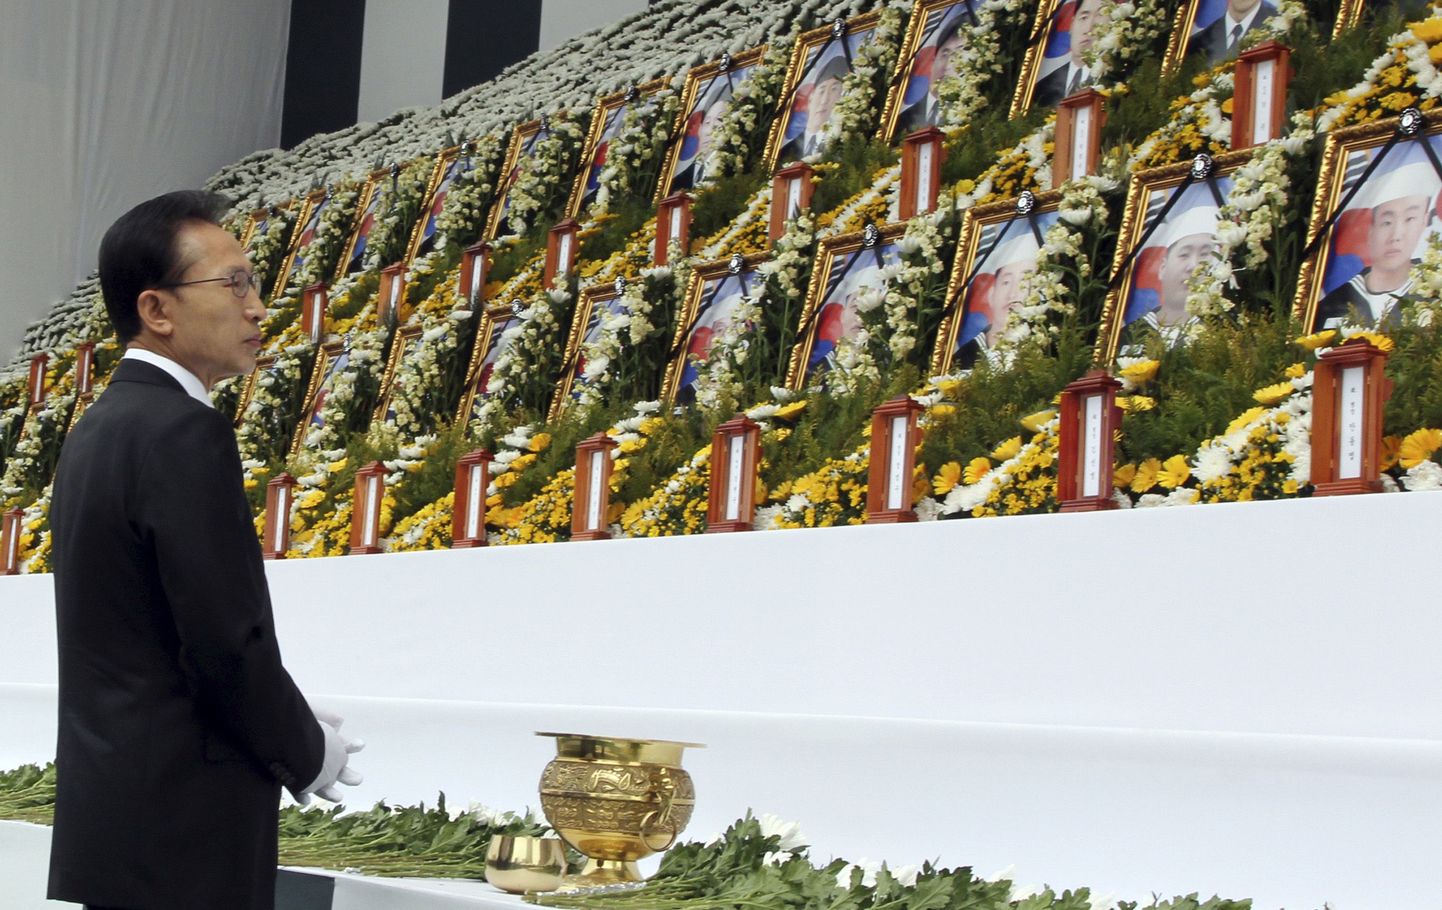 Lõuna-Korea president Lee Myung-Bak hukkunud sõjameeste portreepilte vaatamas.